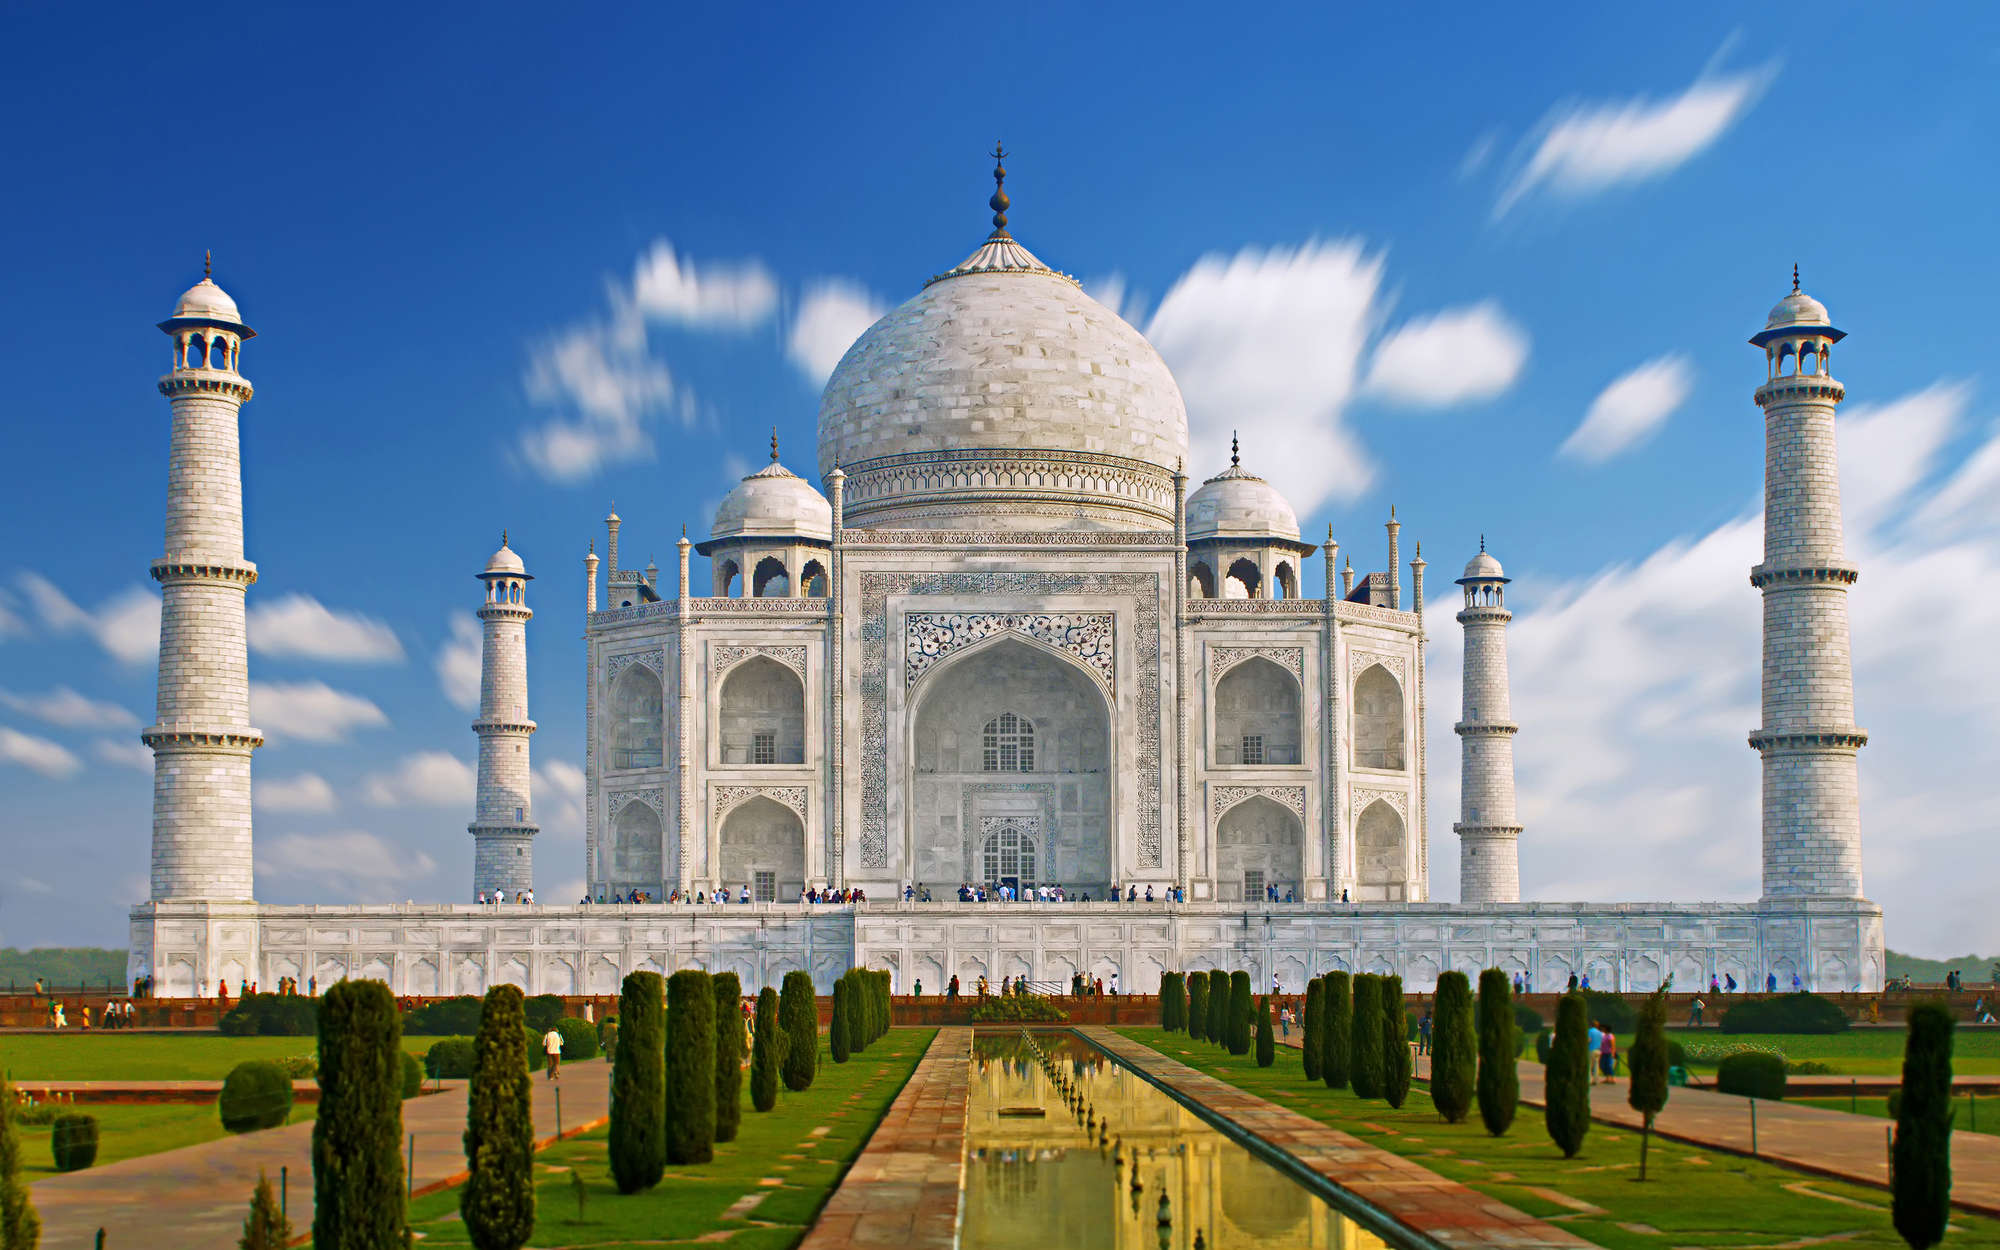             Fototapete Taj Mahal in der Türkei – Mattes Glattvlies
        